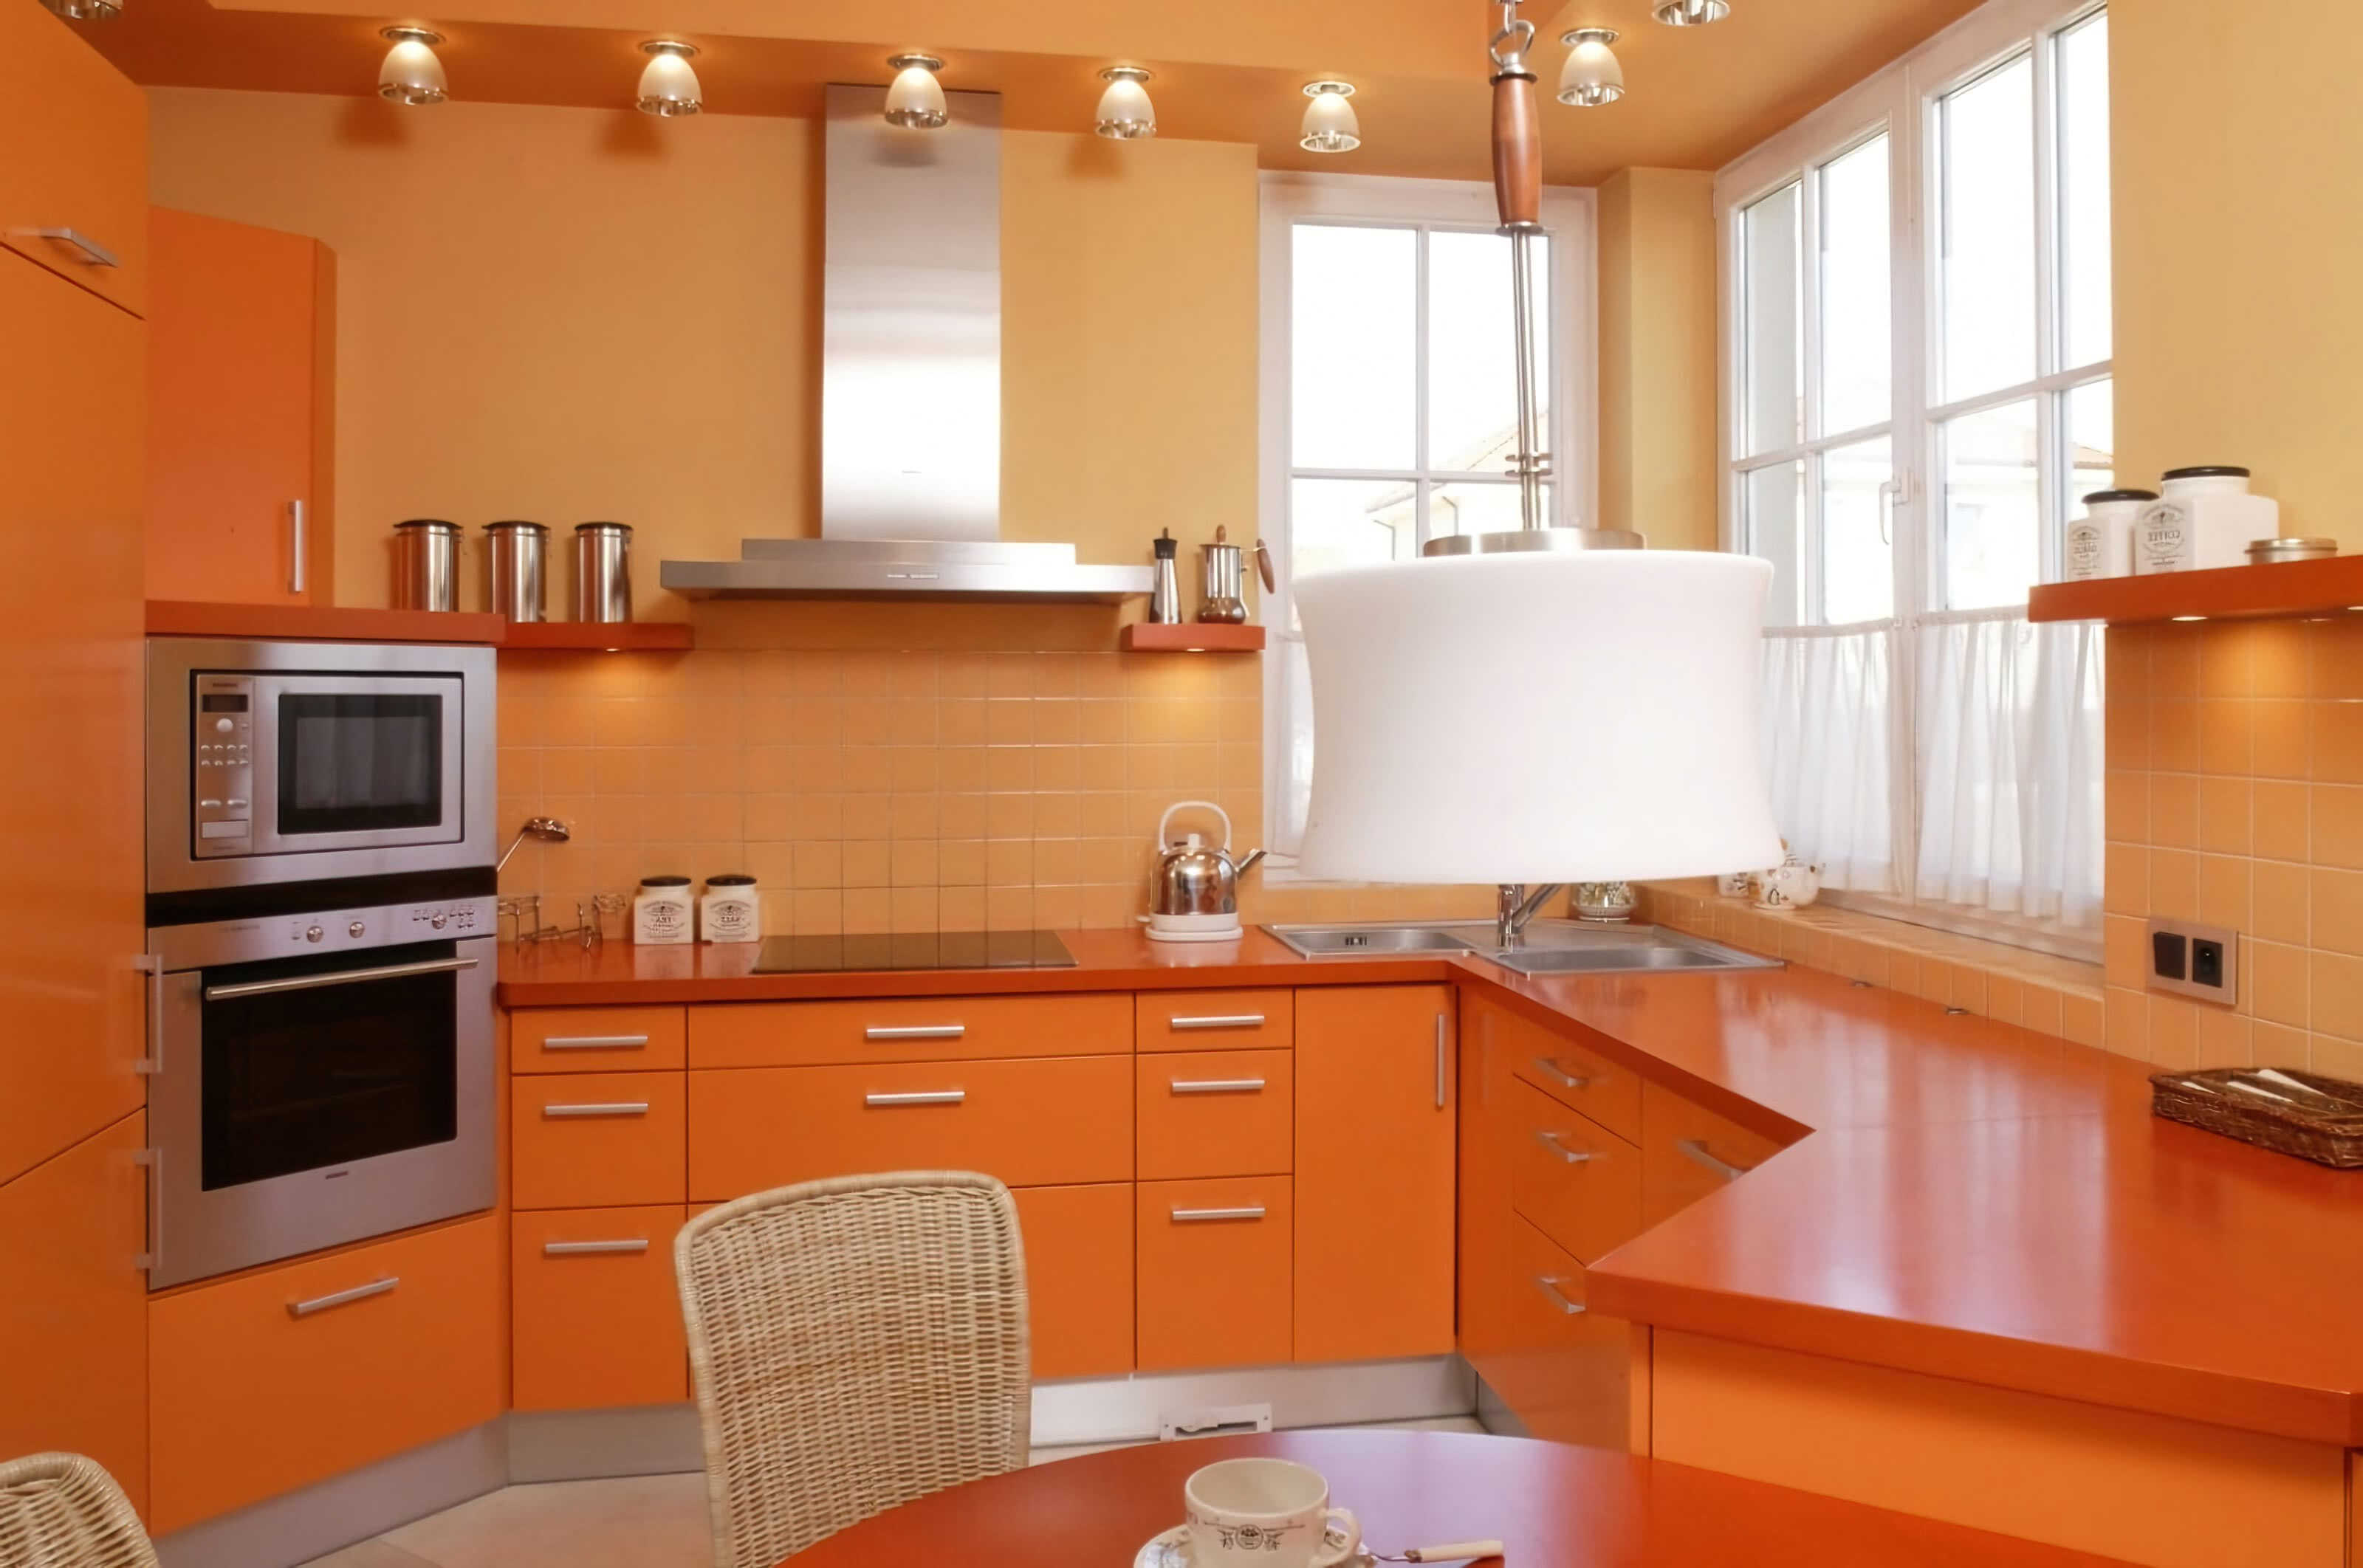 Кухня. Оранжевые стены, мебель, потолок, кухонный гарнитур